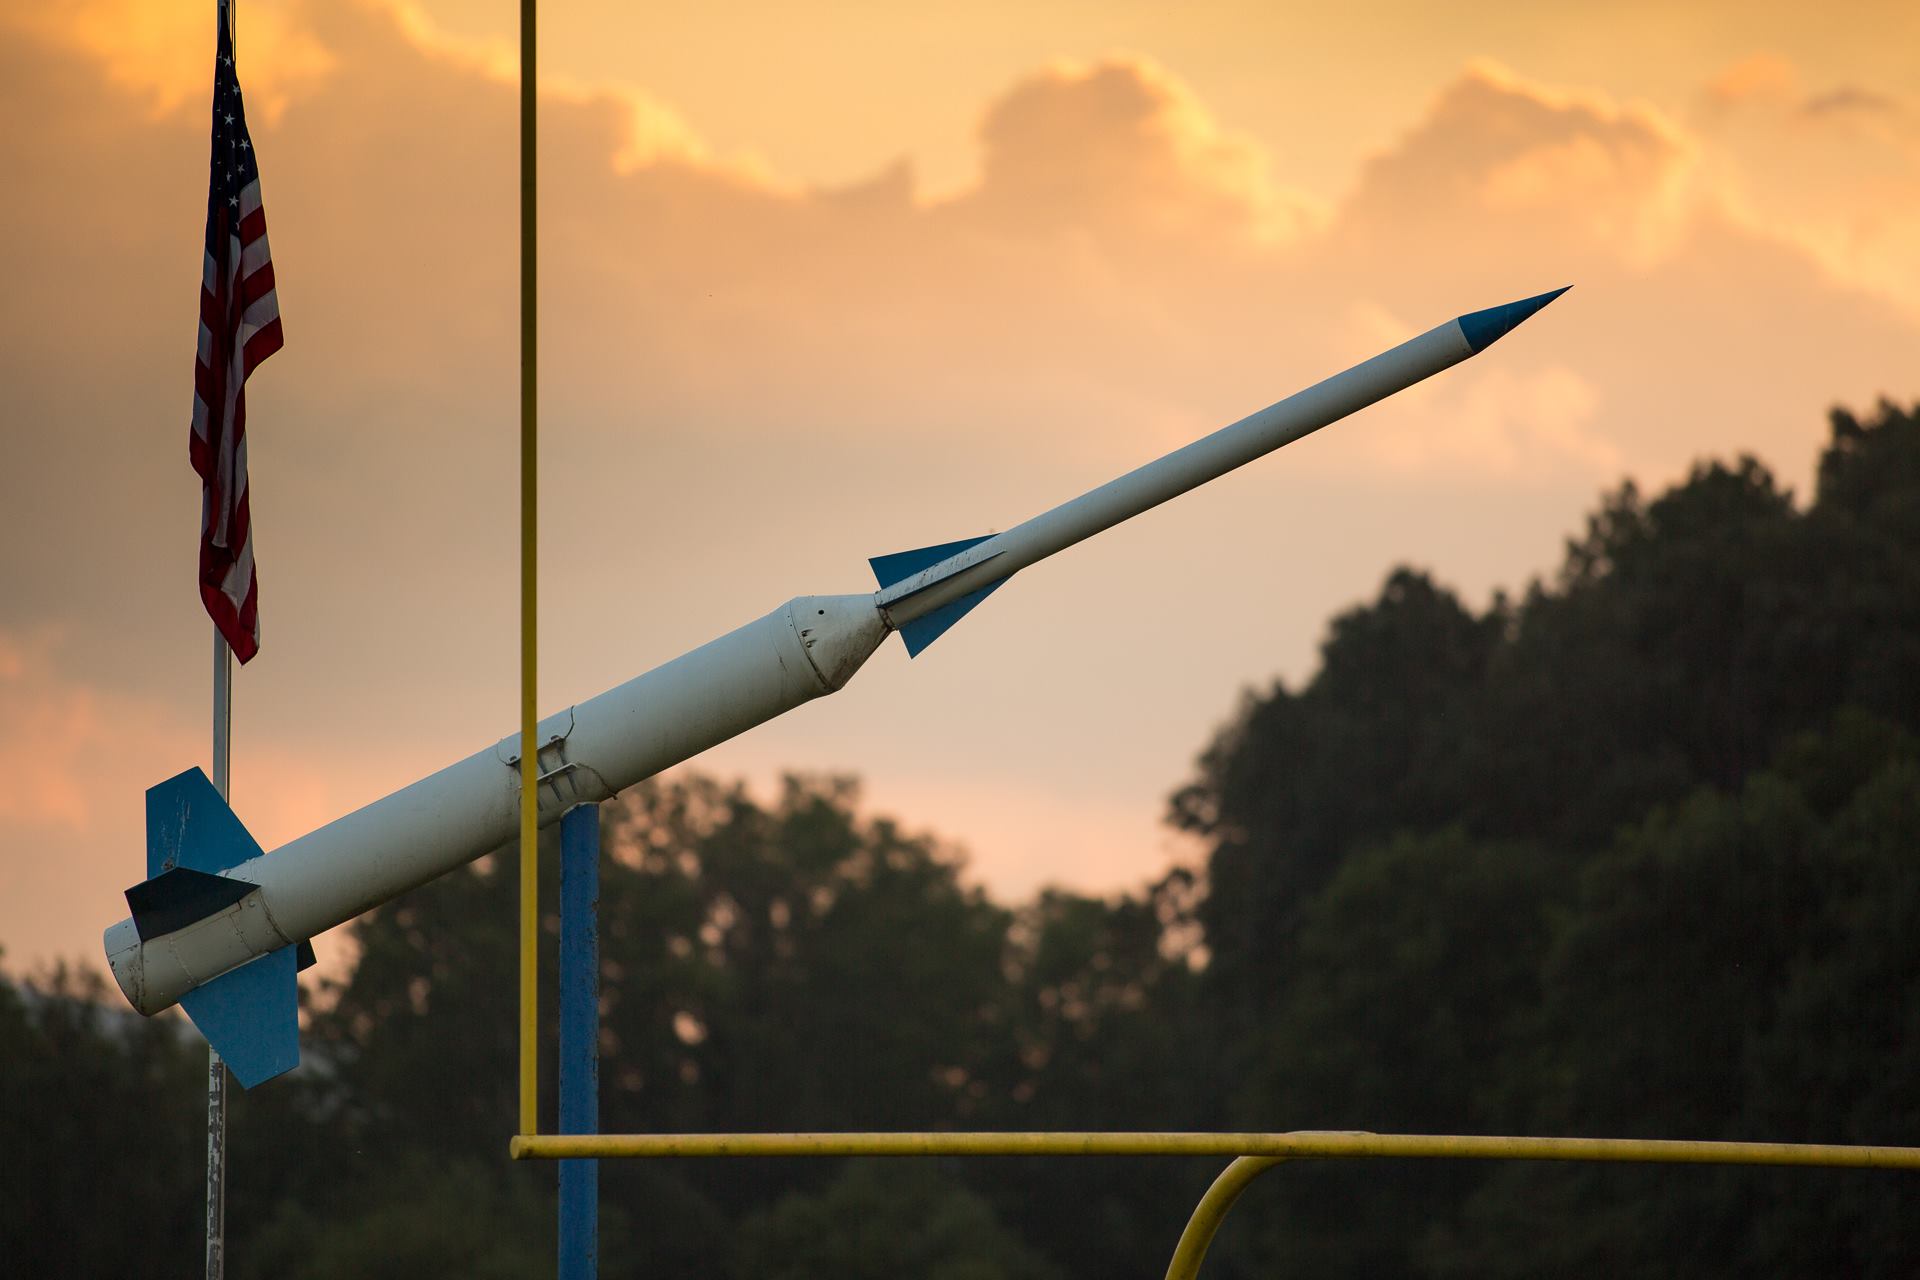 Model rocket on the football field